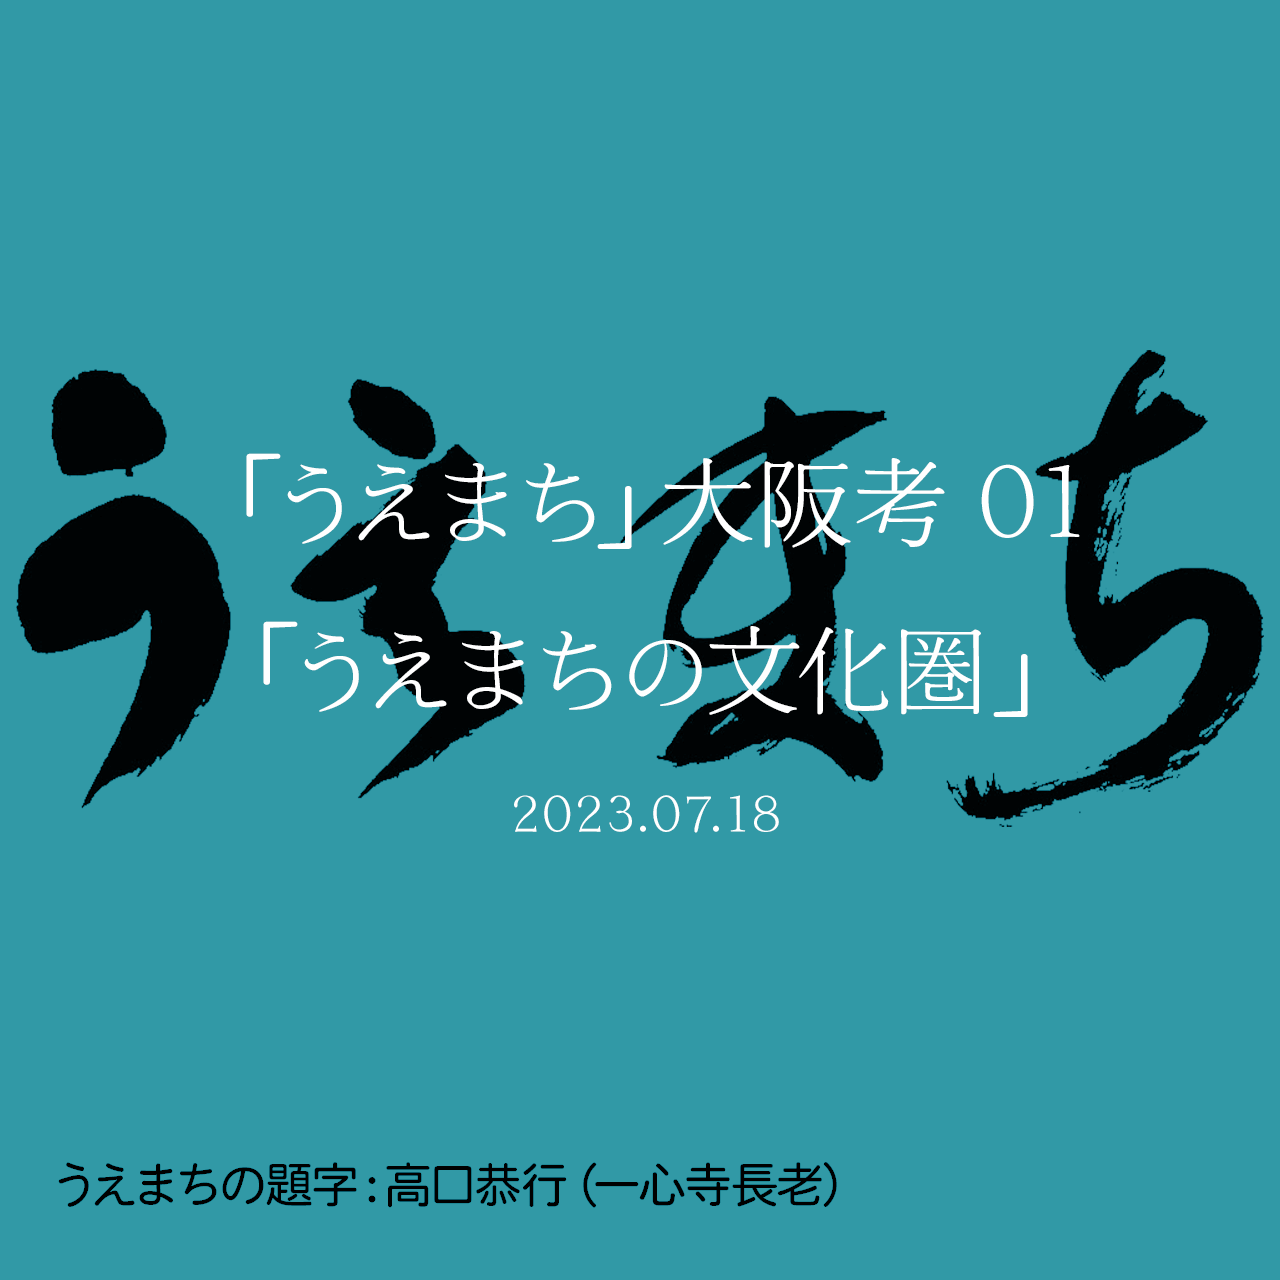 「うえまち」大阪考 01「うえまちの文化圏」